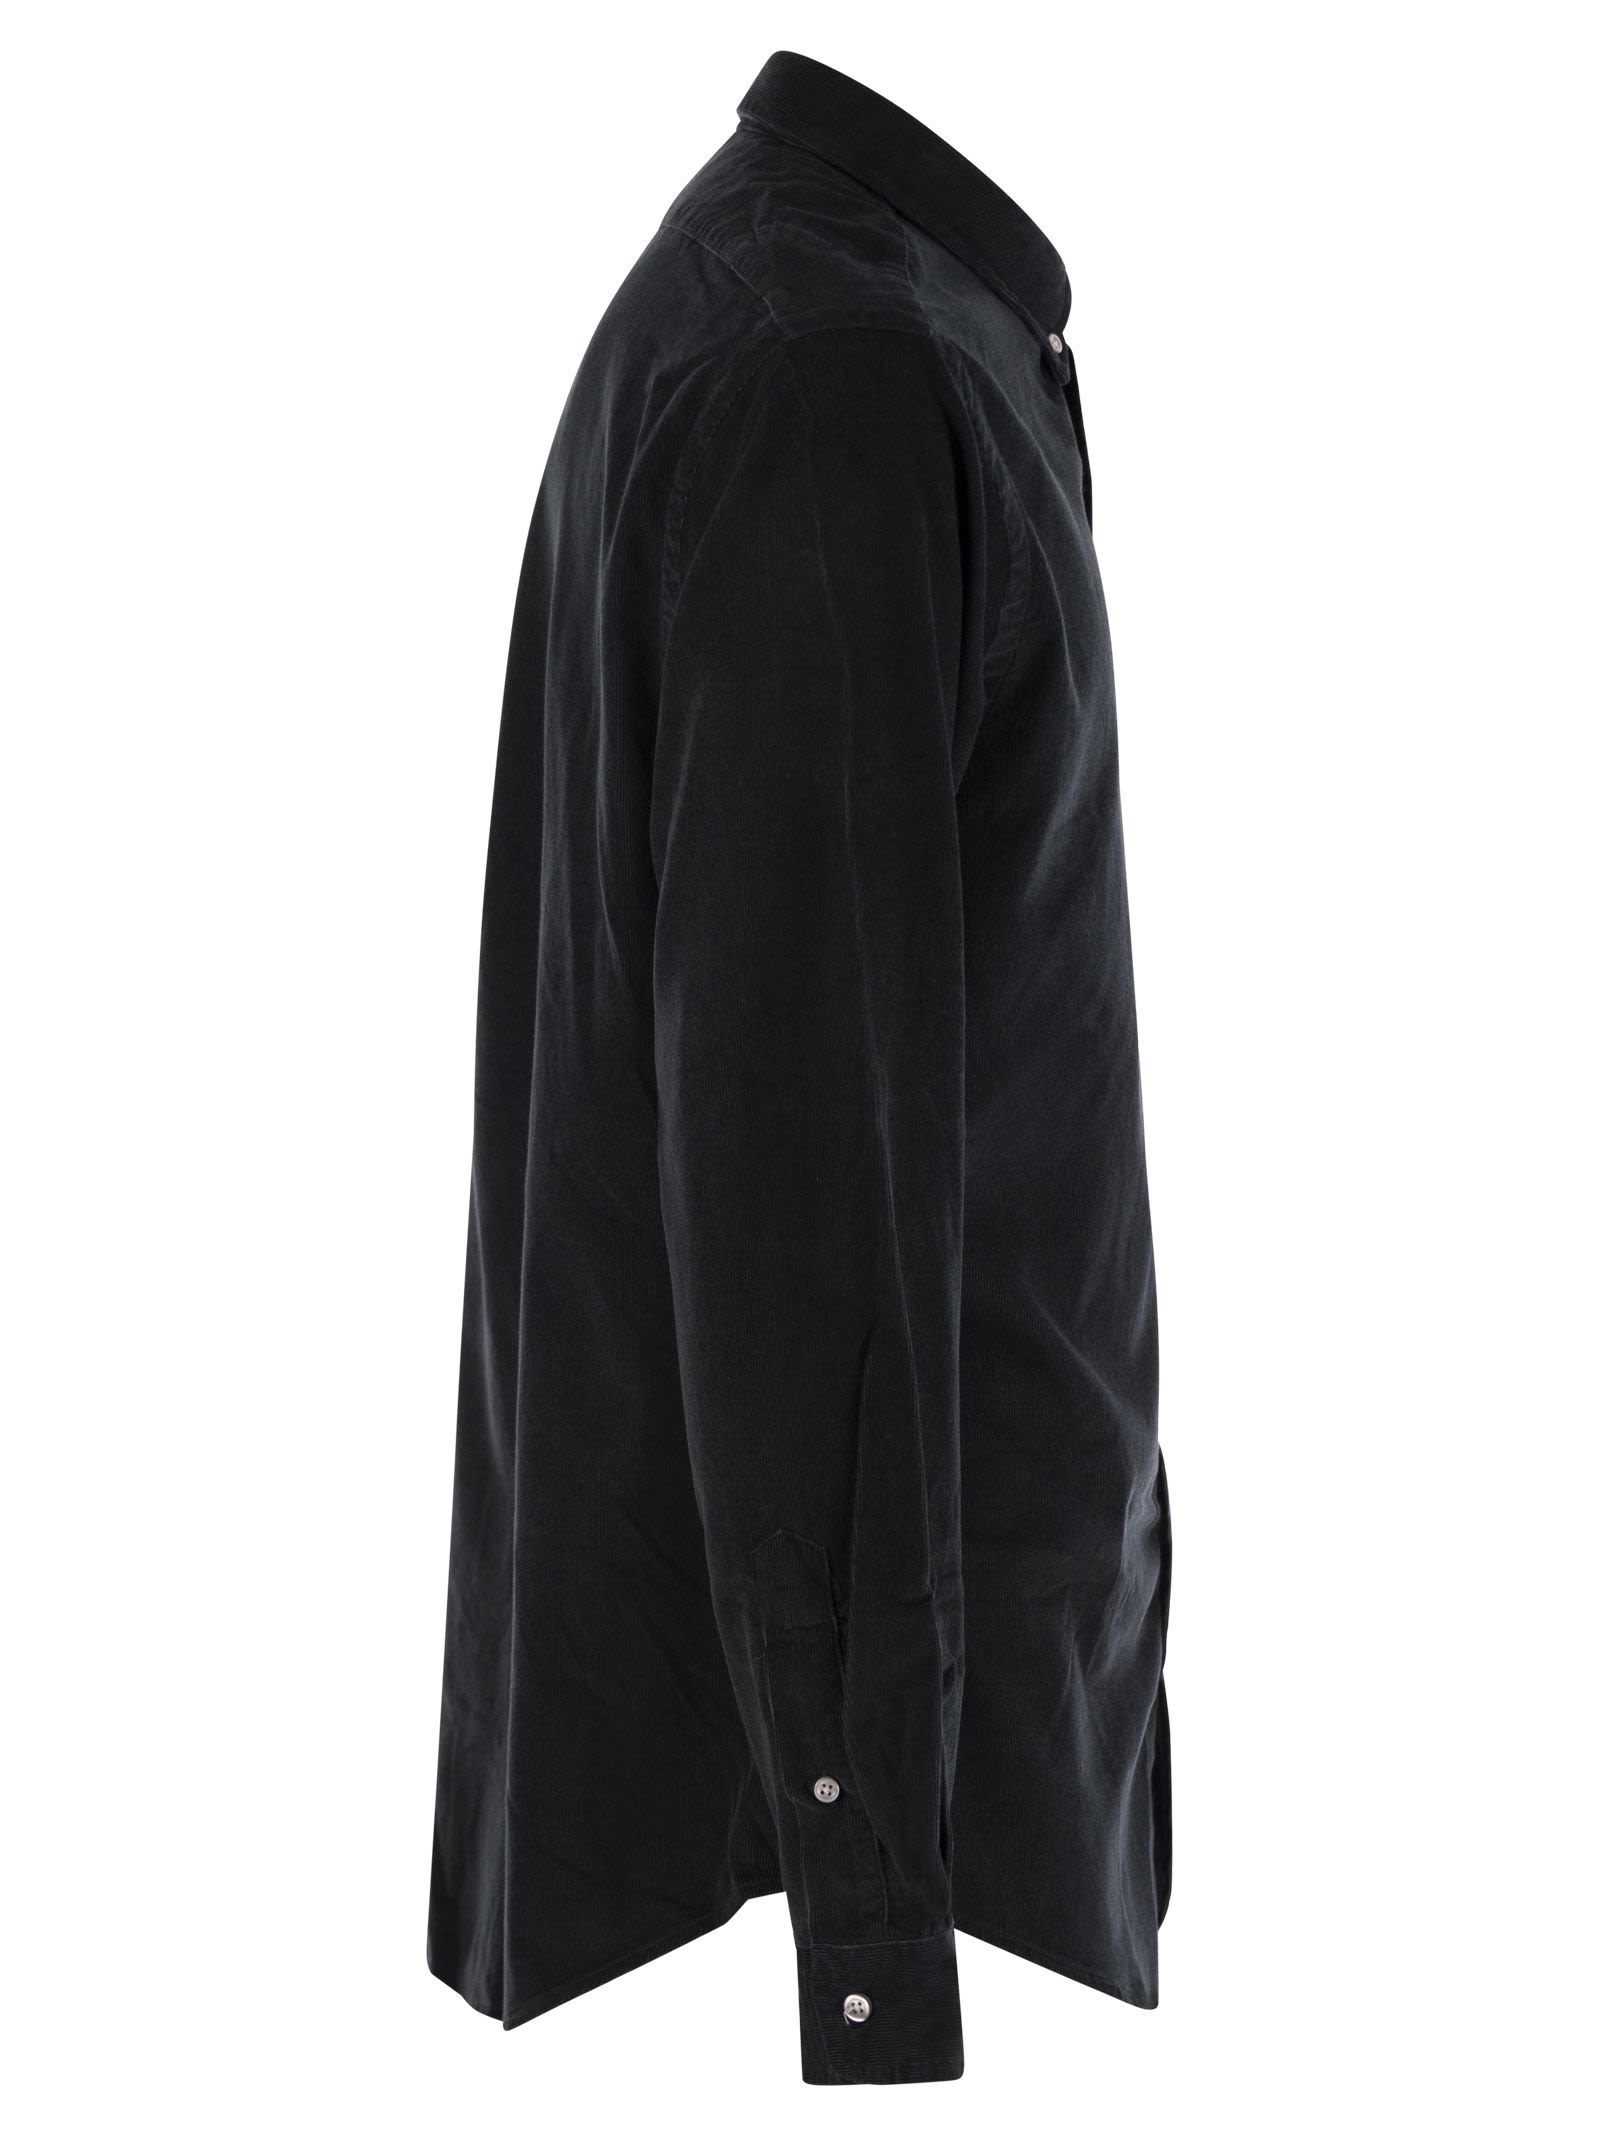 Shop Polo Ralph Lauren Slim-fit Velvet Shirt In Black